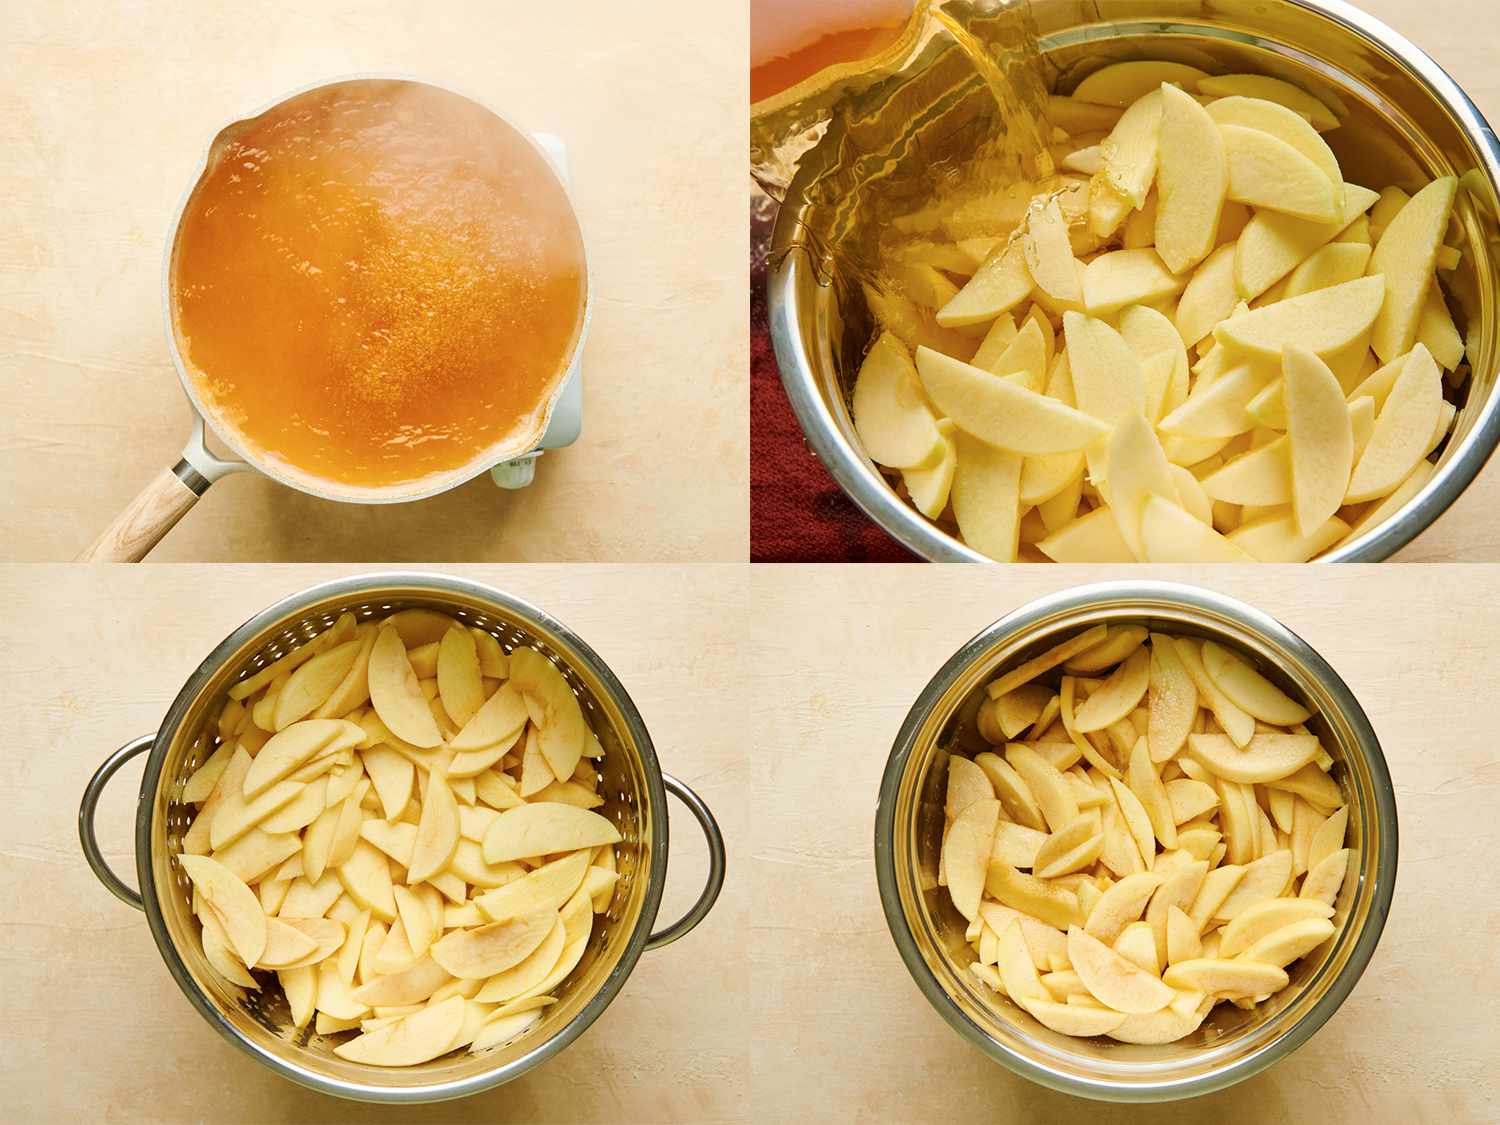 四幅图片的拼贴画。左上角的图片显示了苹果在平底锅里沸腾的一面。右上方的图片显示苹果面被倒在一个金属碗里的切片苹果上。左下角的图片显示了苹果在滤器中沥干。右下角的图片显示，苹果均匀地裹上糖、肉桂、盐和玉米淀粉，放在一个大碗里。